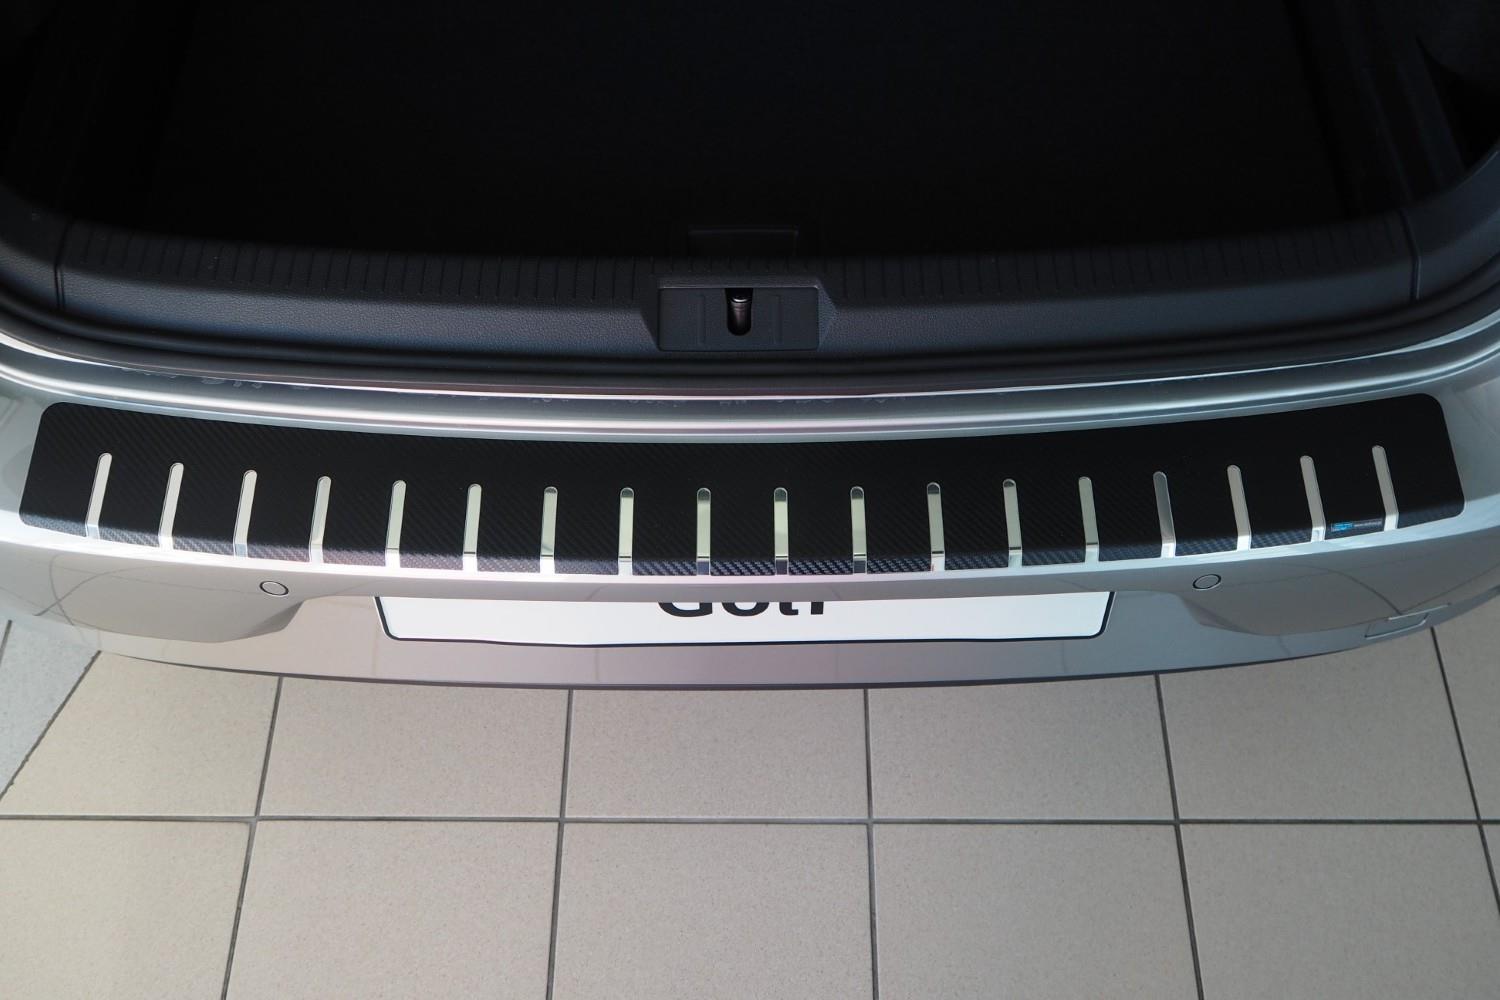 Lackschutzshop - Lackschutz-Folie als Ladekantenschutz passend für VW Golf  Sportsvan 5G (Autofolie und Schutzfolie) transparent 150µm mit